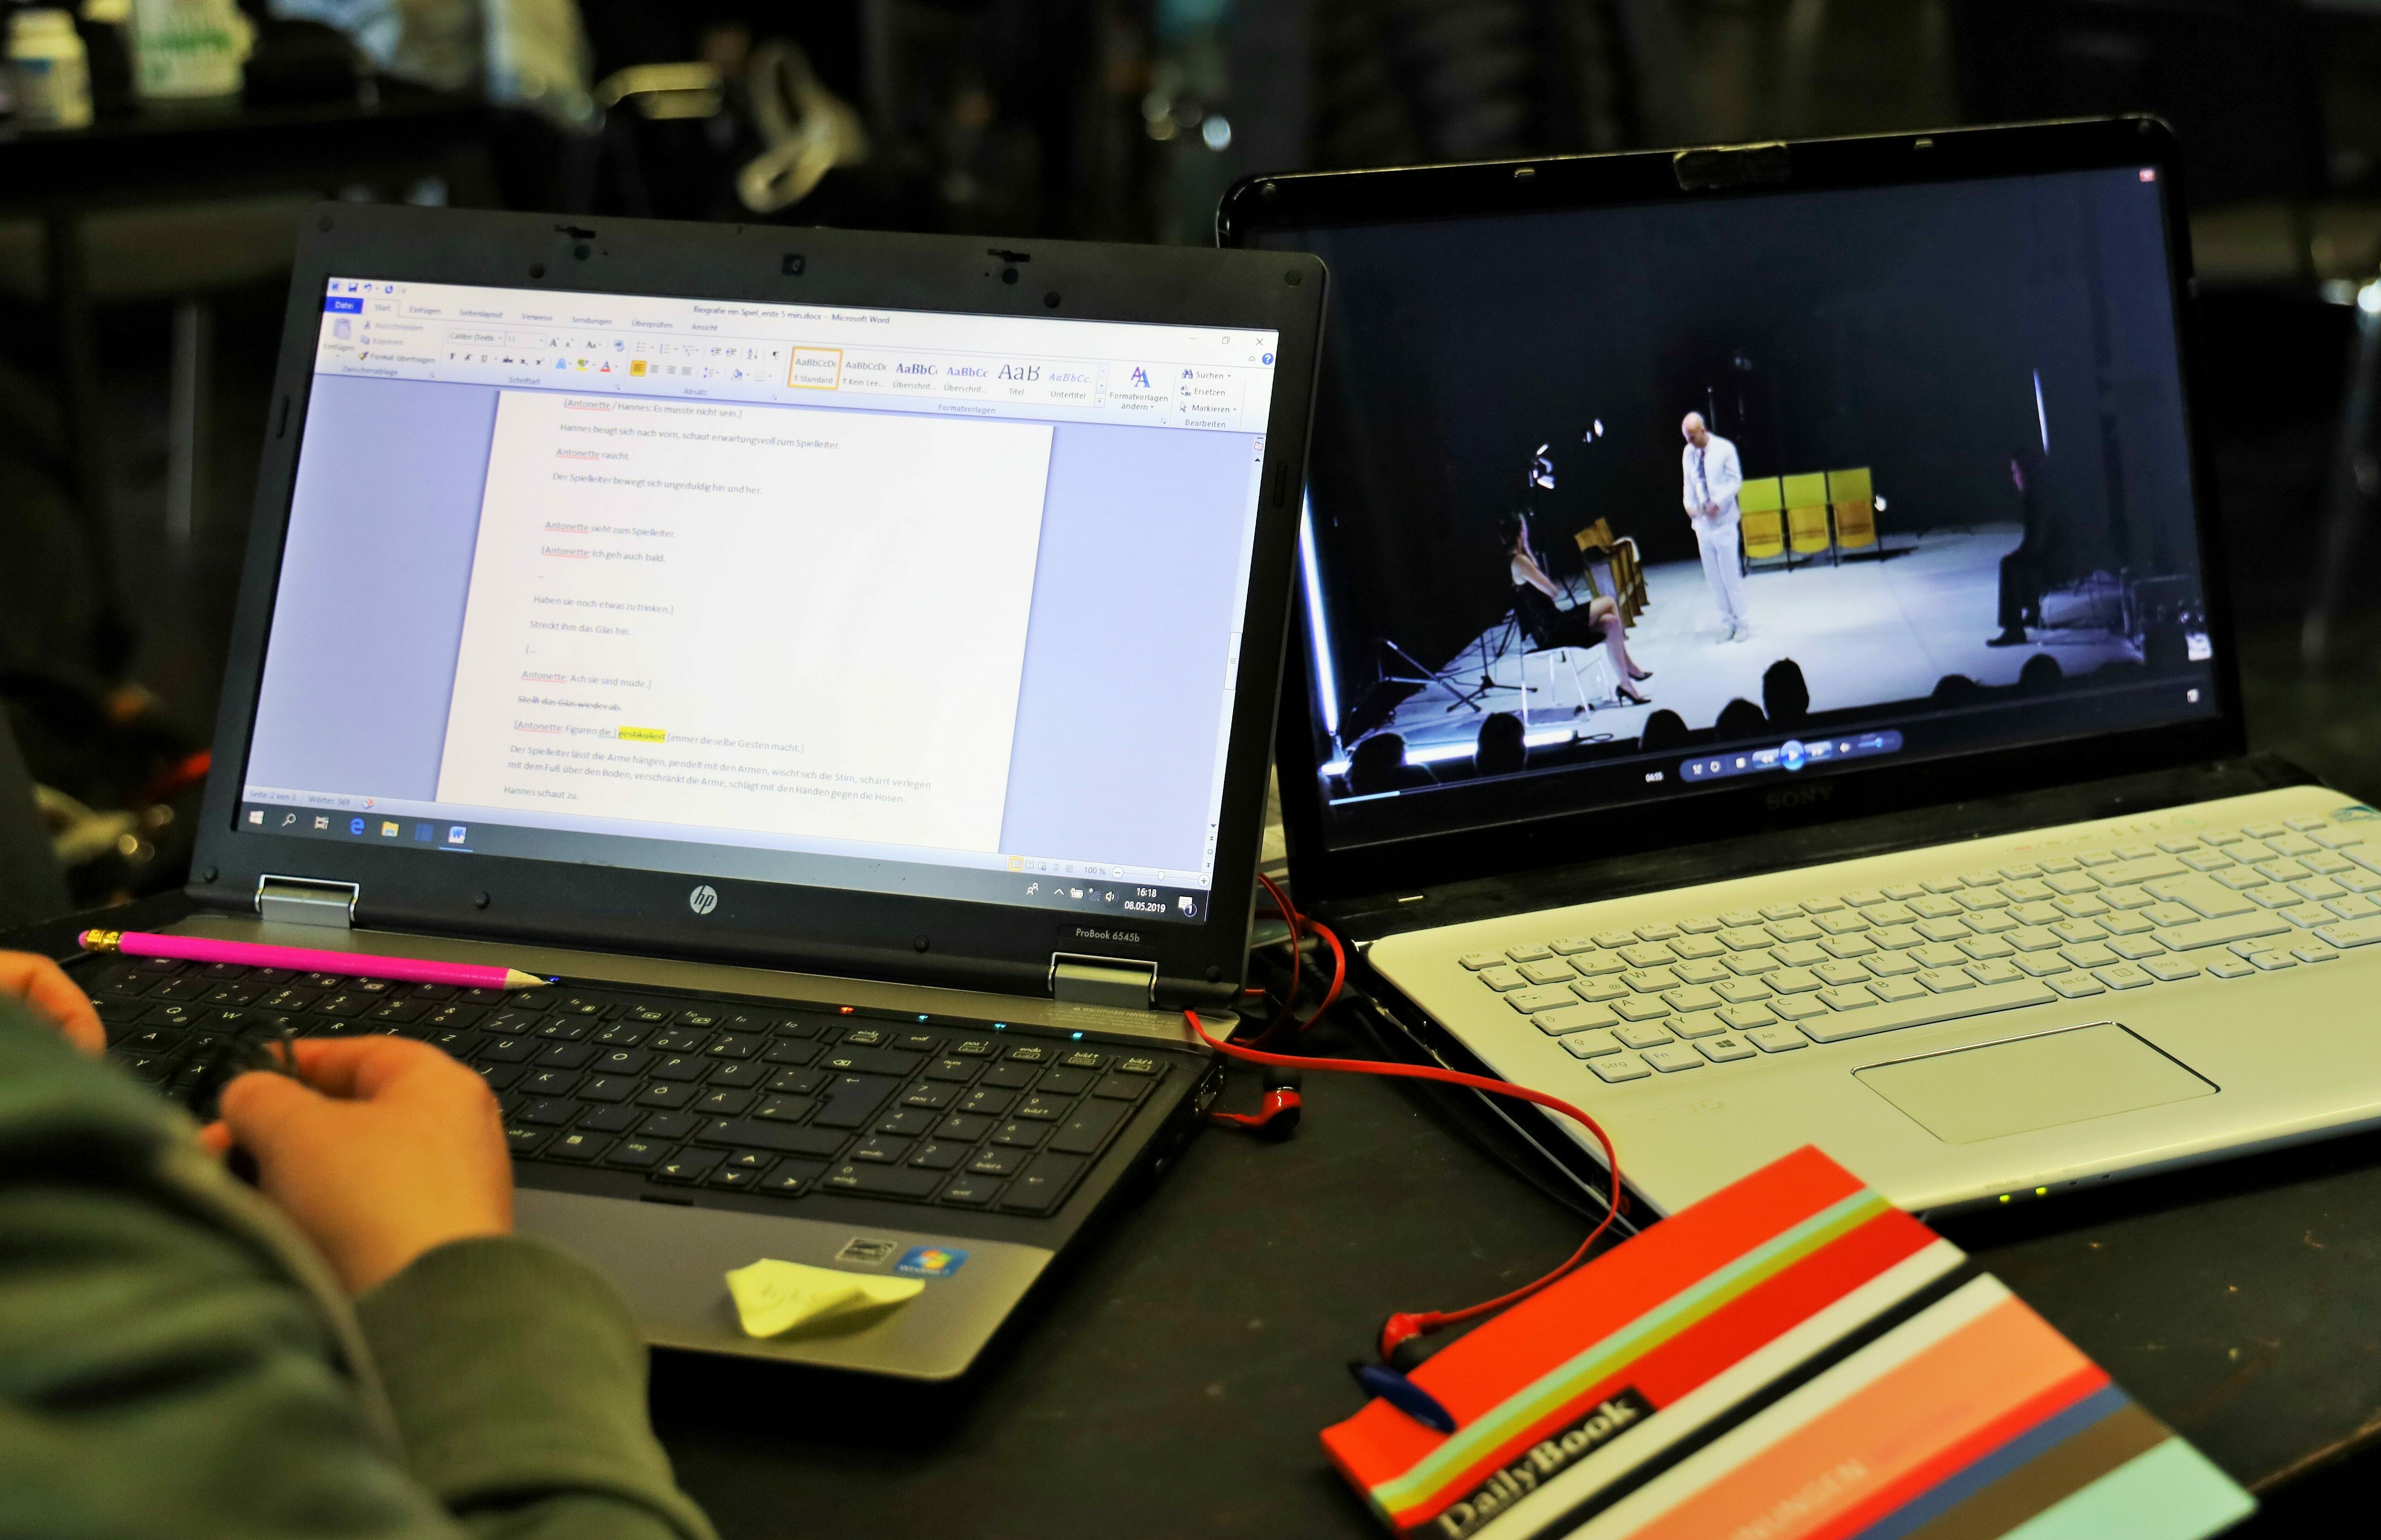 Das Foto zeigt zwei Laptops nebeneinander. Sie sind aufgeklappt. Der rechte Laptop zeigt ein Video, der linke einen Text. Zwischen den Laptops liegt ein Notizbuch.